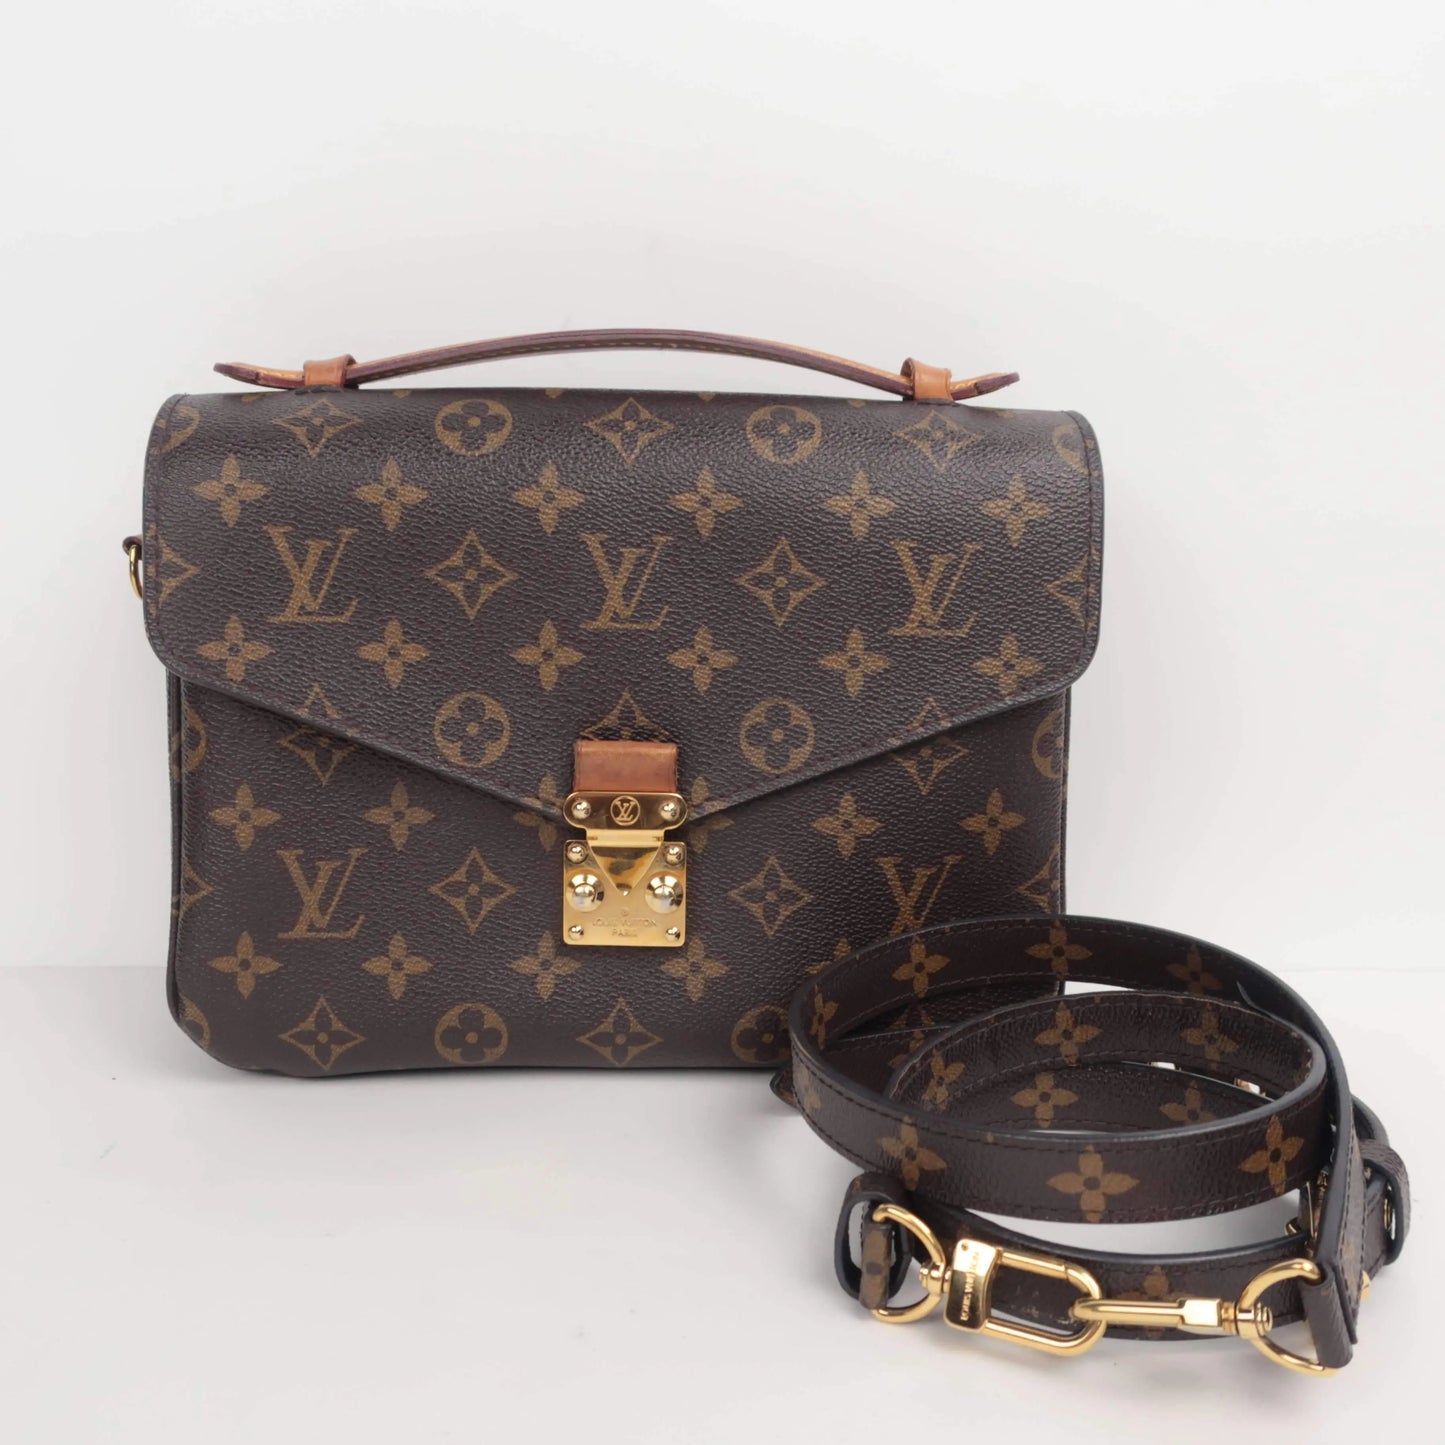 Louis Vuitton Metis Bag 